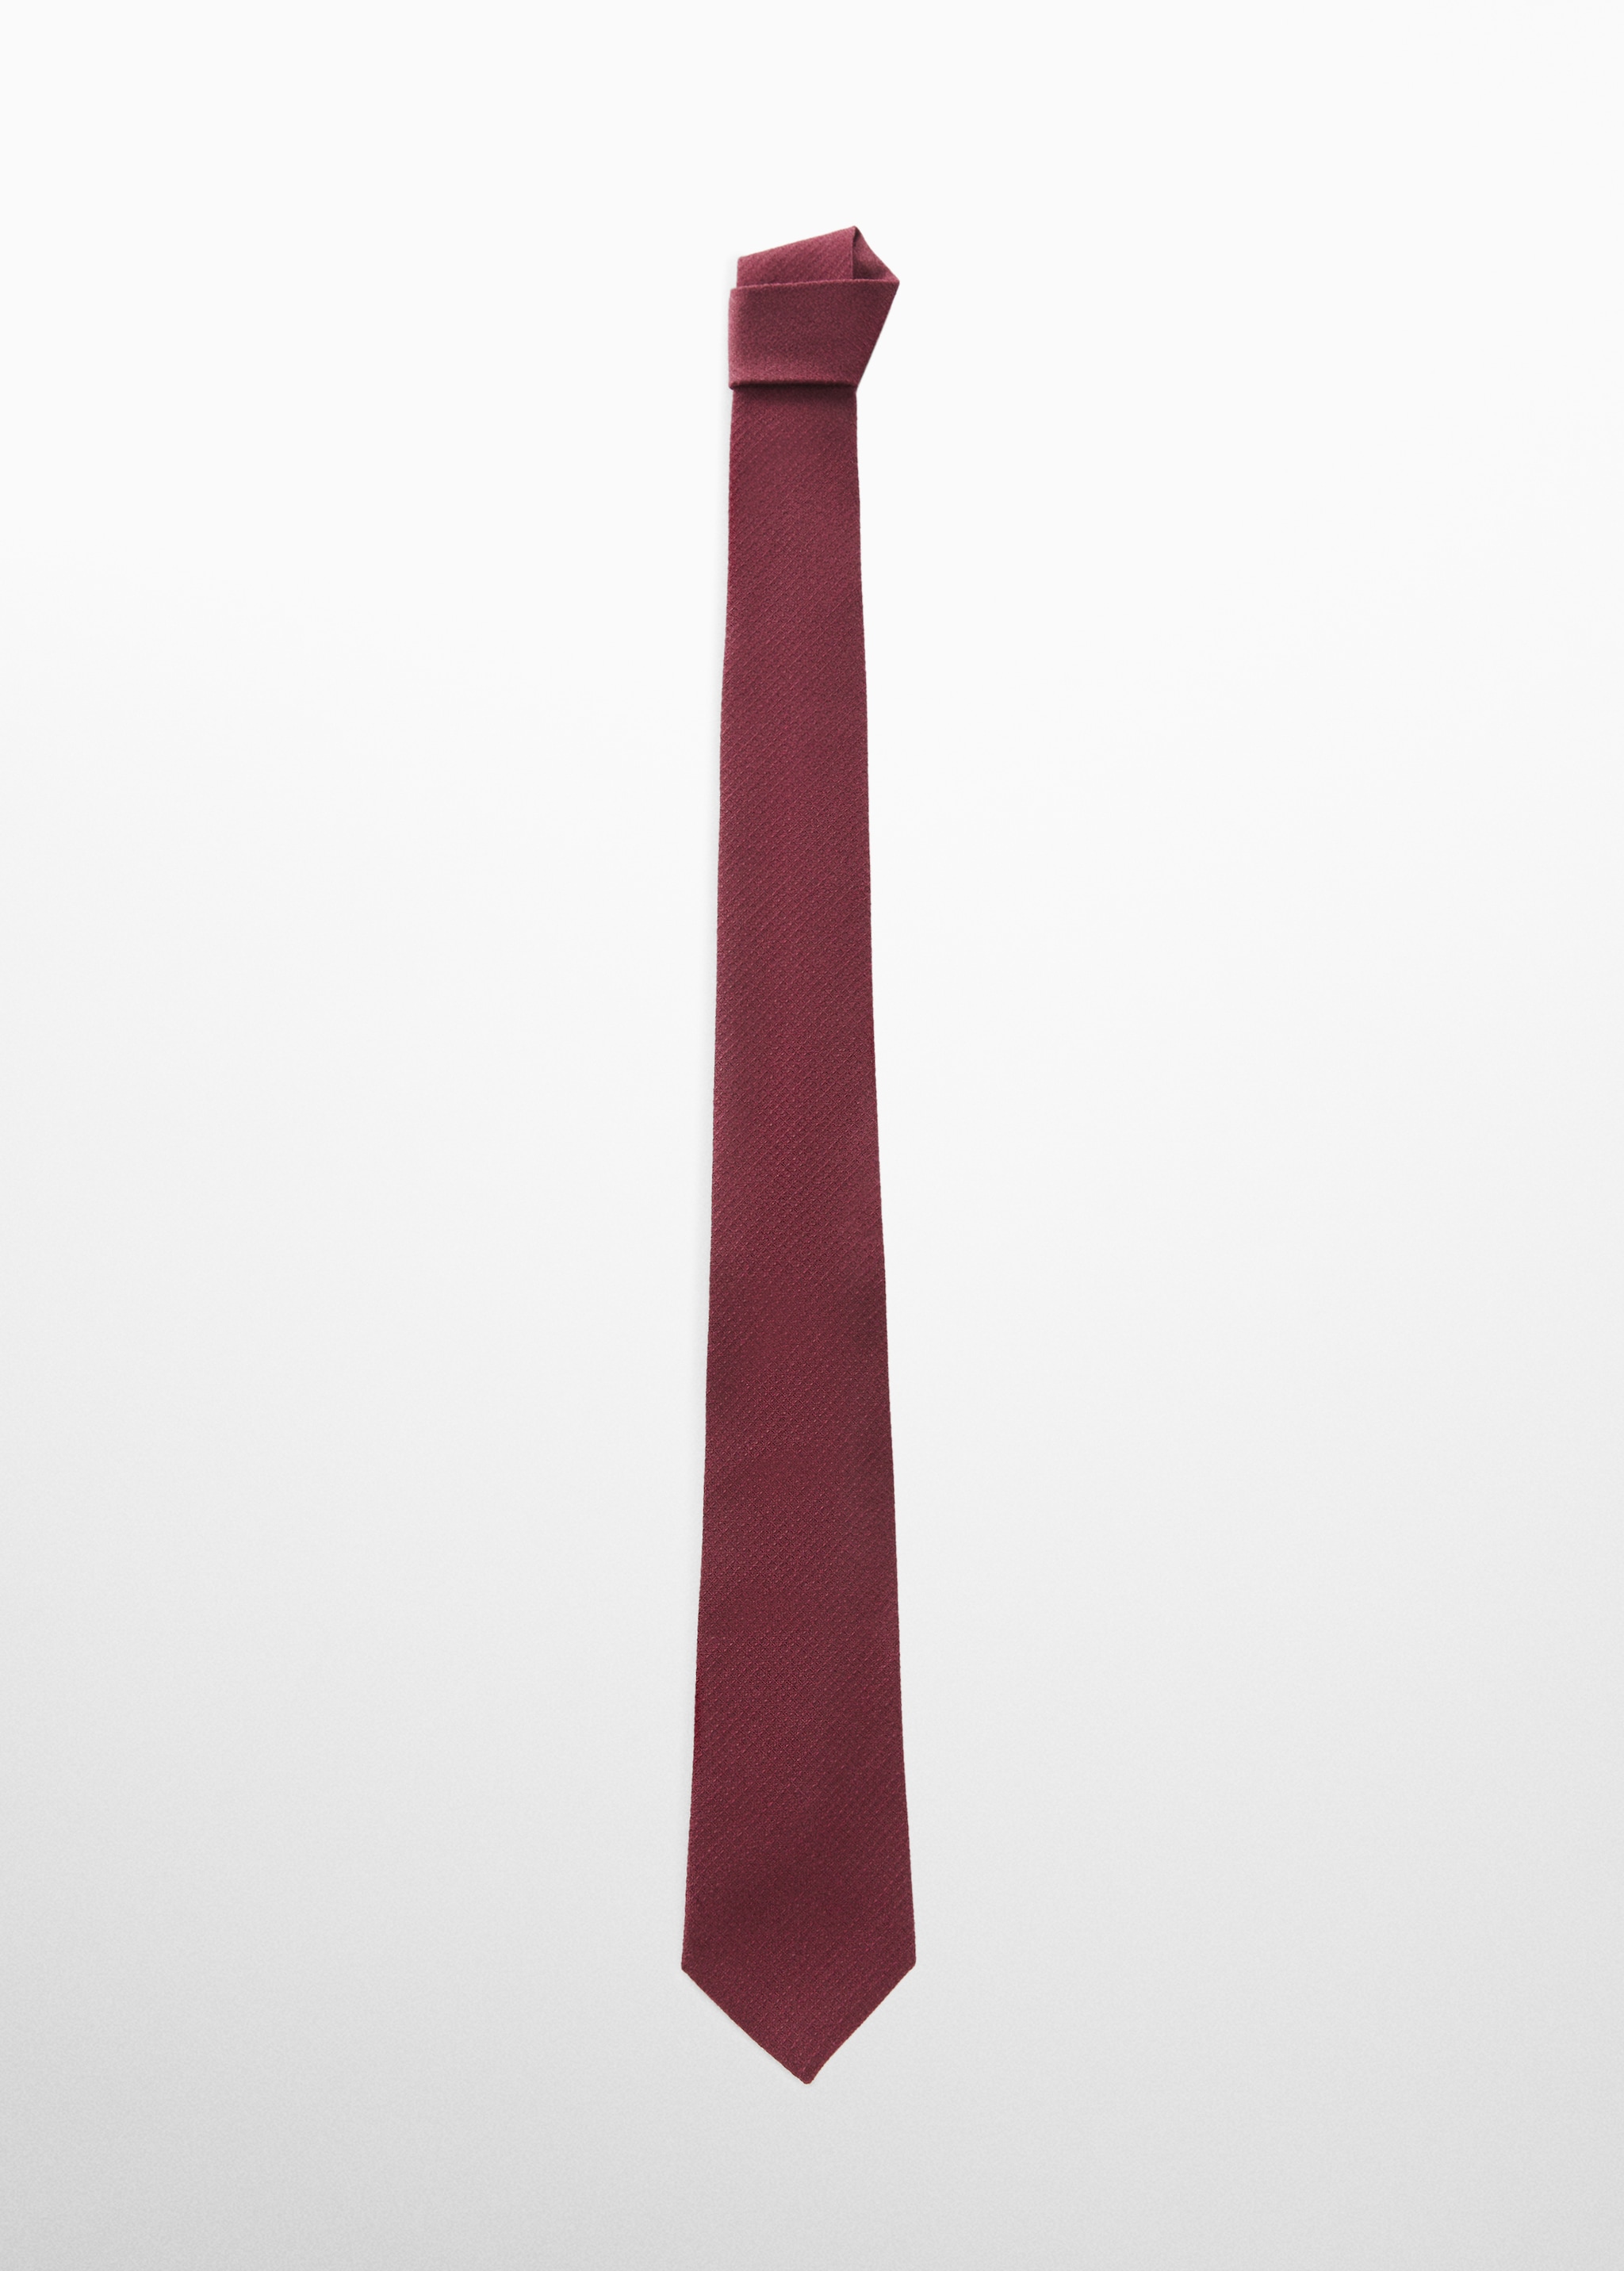 Cravate structurée coton - Article sans modèle